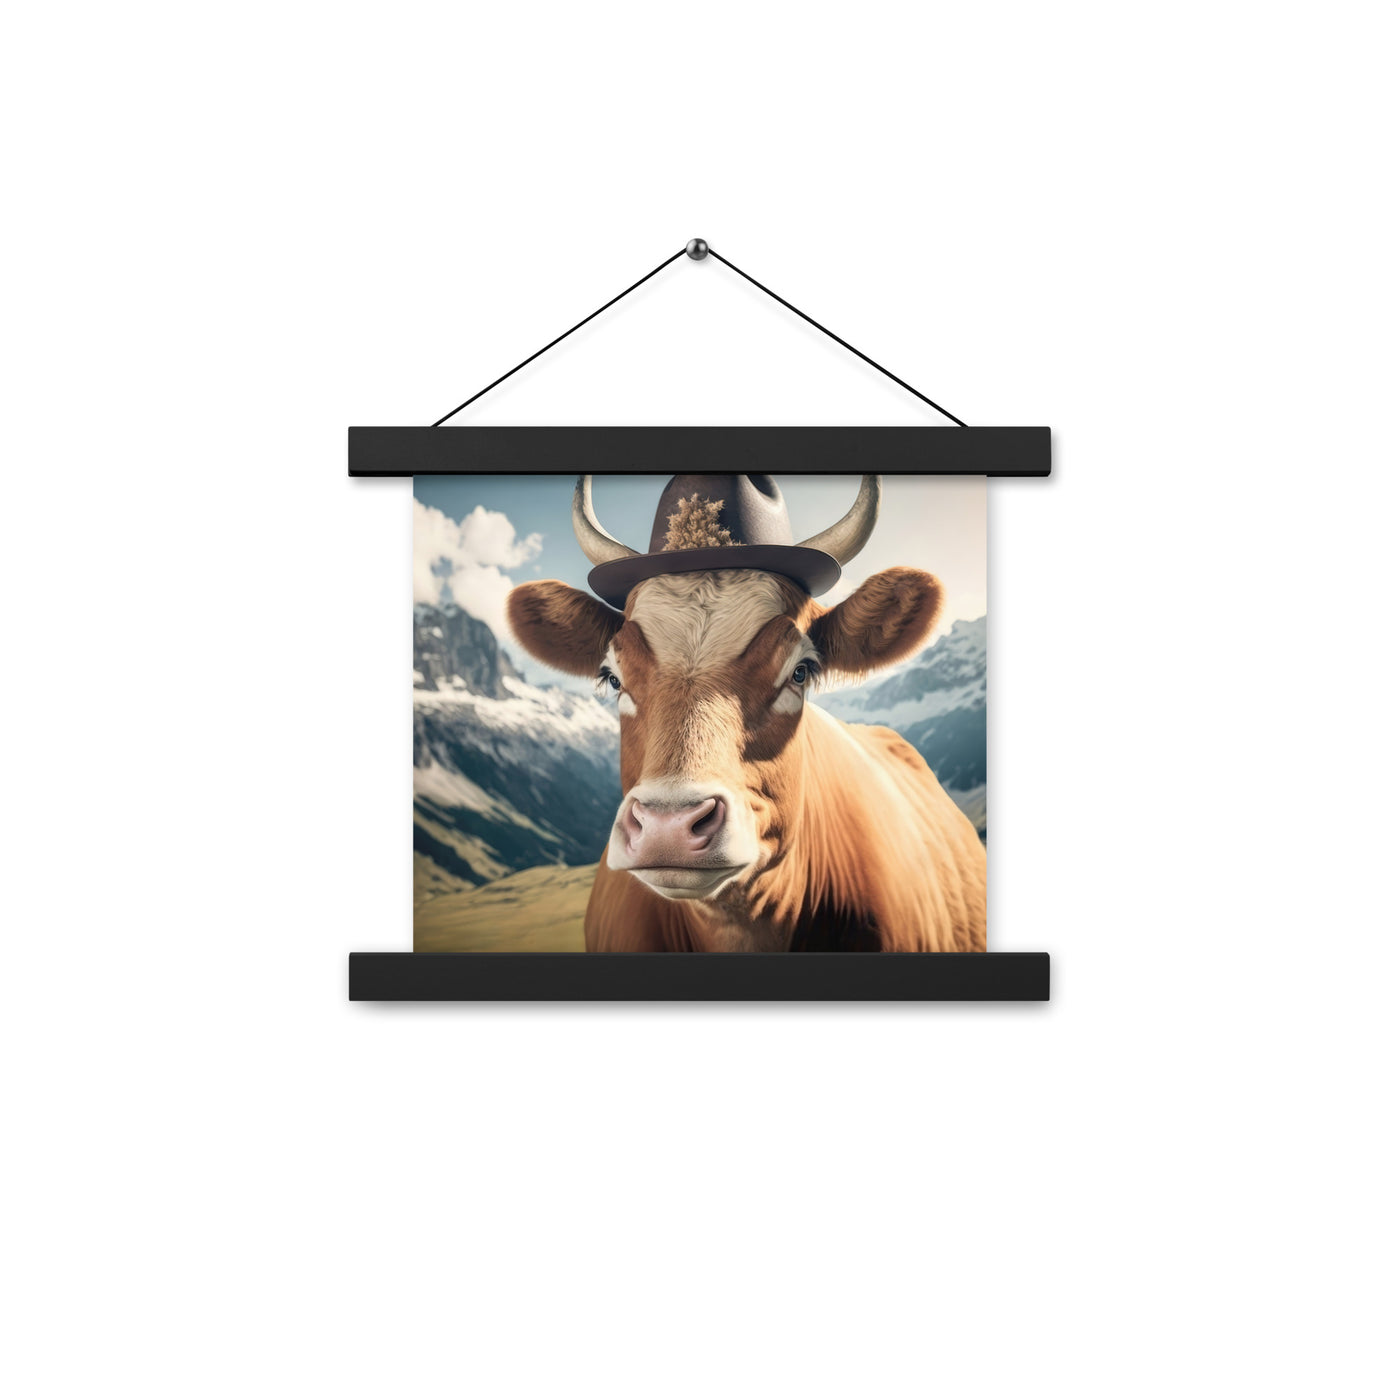 Kuh mit Hut in den Alpen - Berge im Hintergrund - Landschaftsmalerei - Premium Poster mit Aufhängung berge xxx Black 25.4 x 25.4 cm